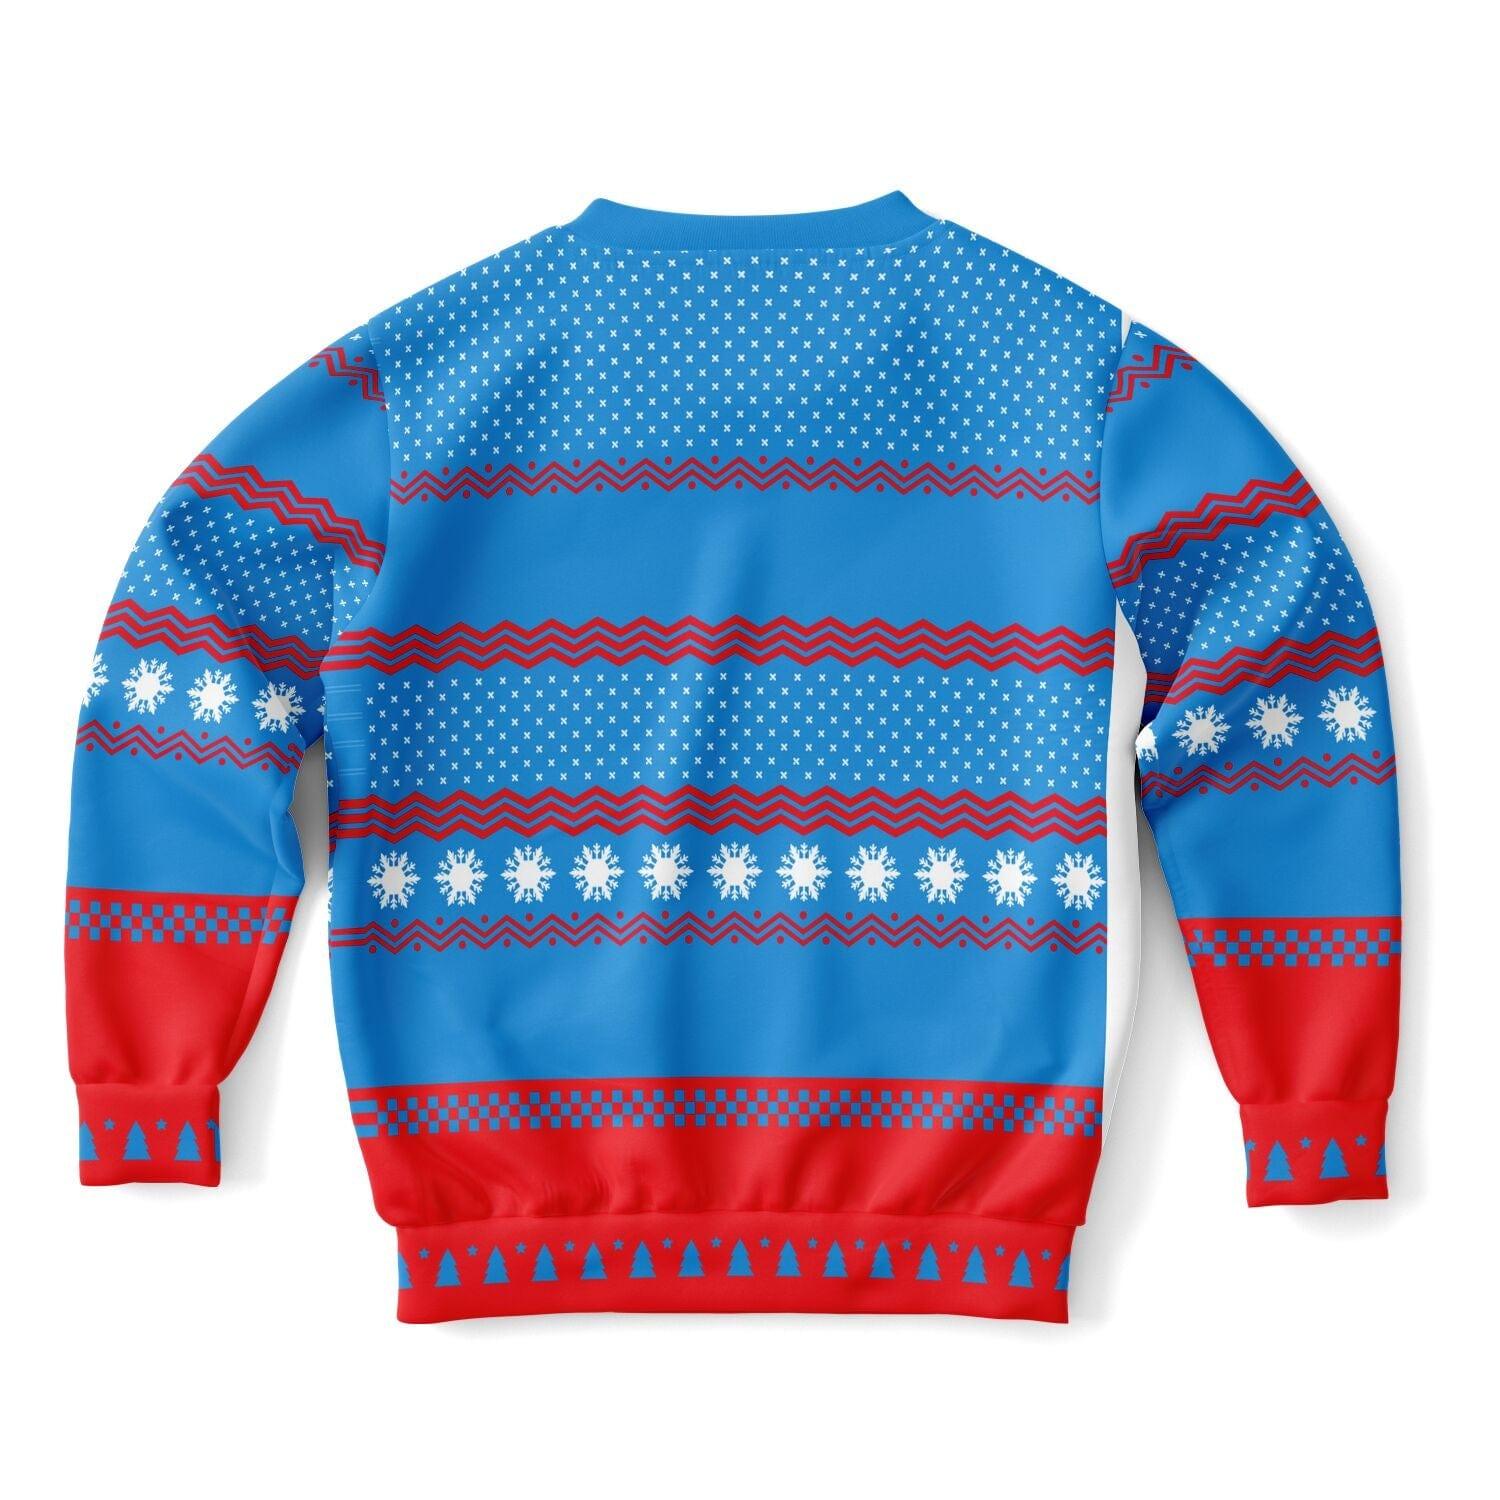 Meowy Christmas Kids Unisex Ugly Christmas Sweatshirt - TopKoalaTee